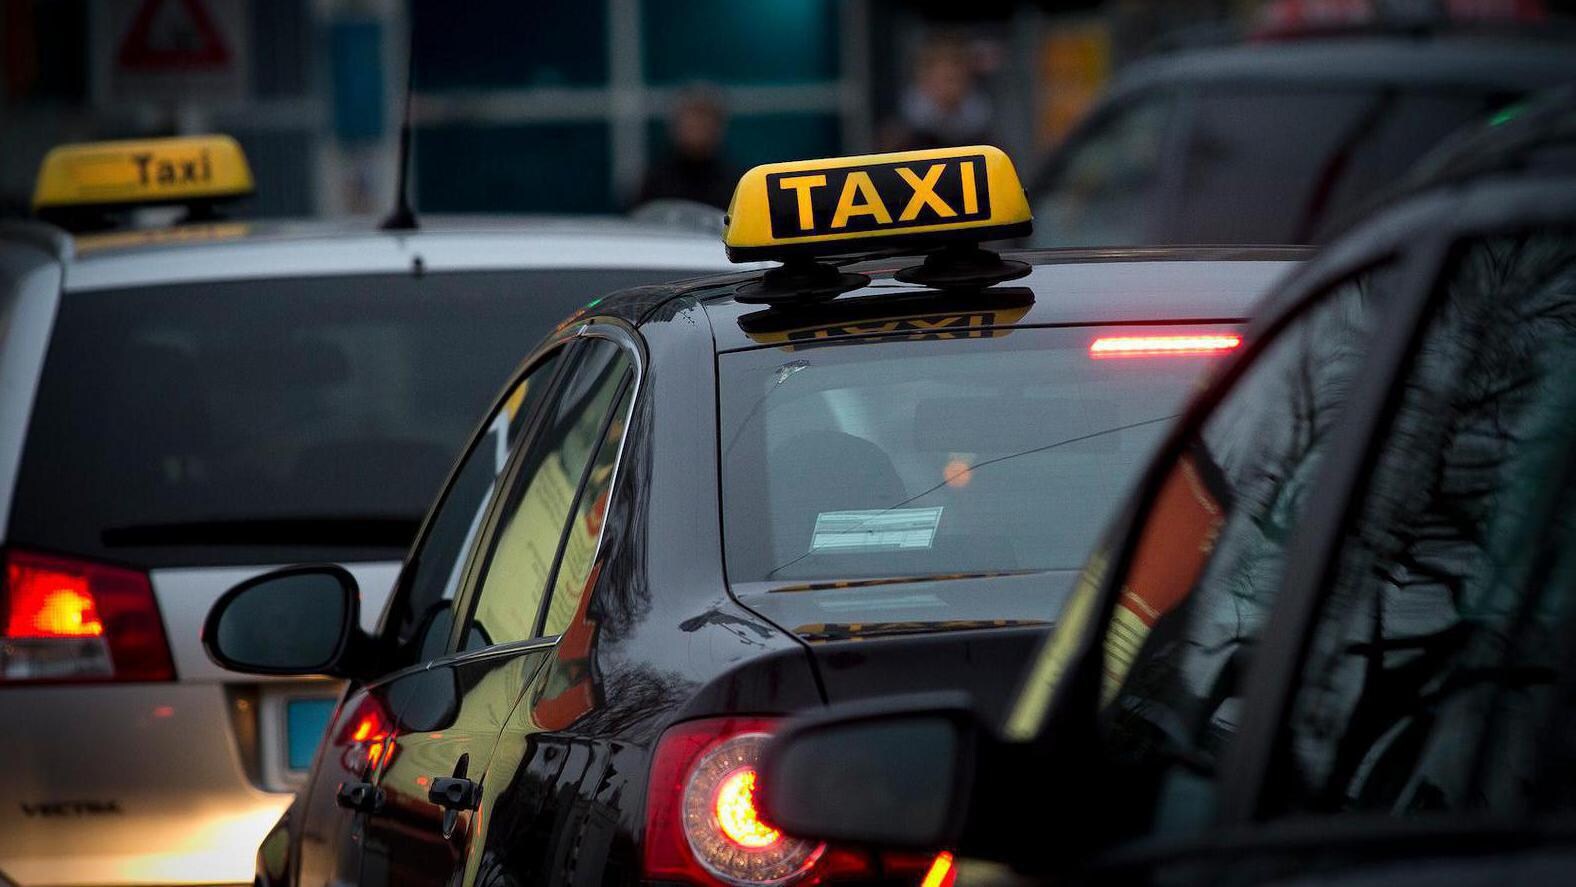 'Taxihandhaving moet efficiënter'